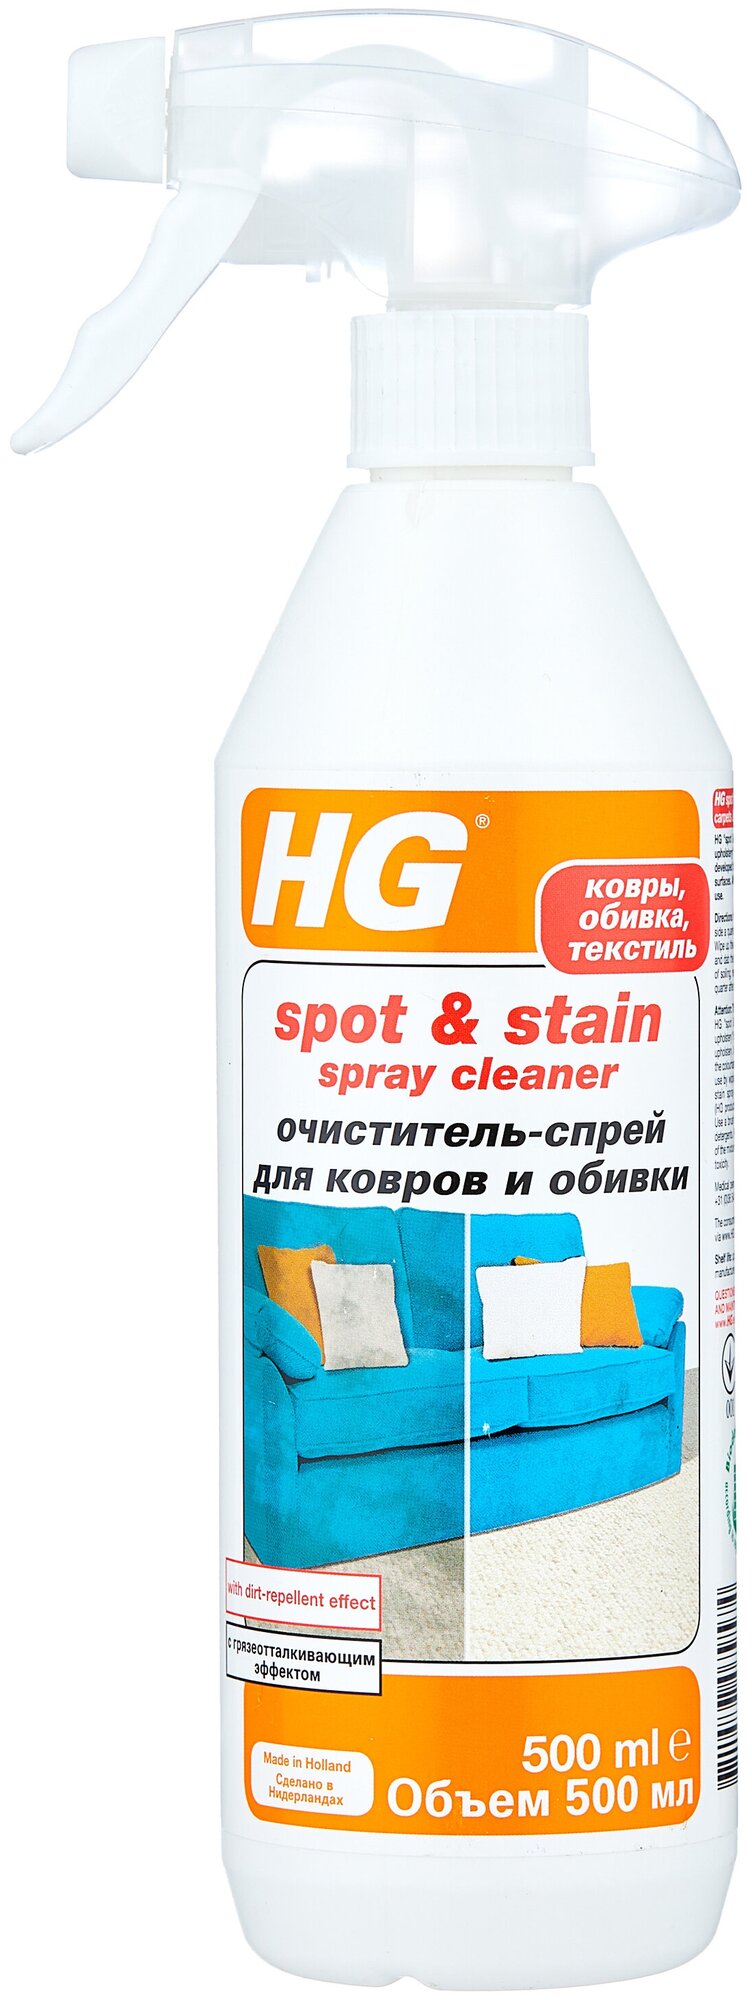 HG Очиститель-спрей для ковров и обивки